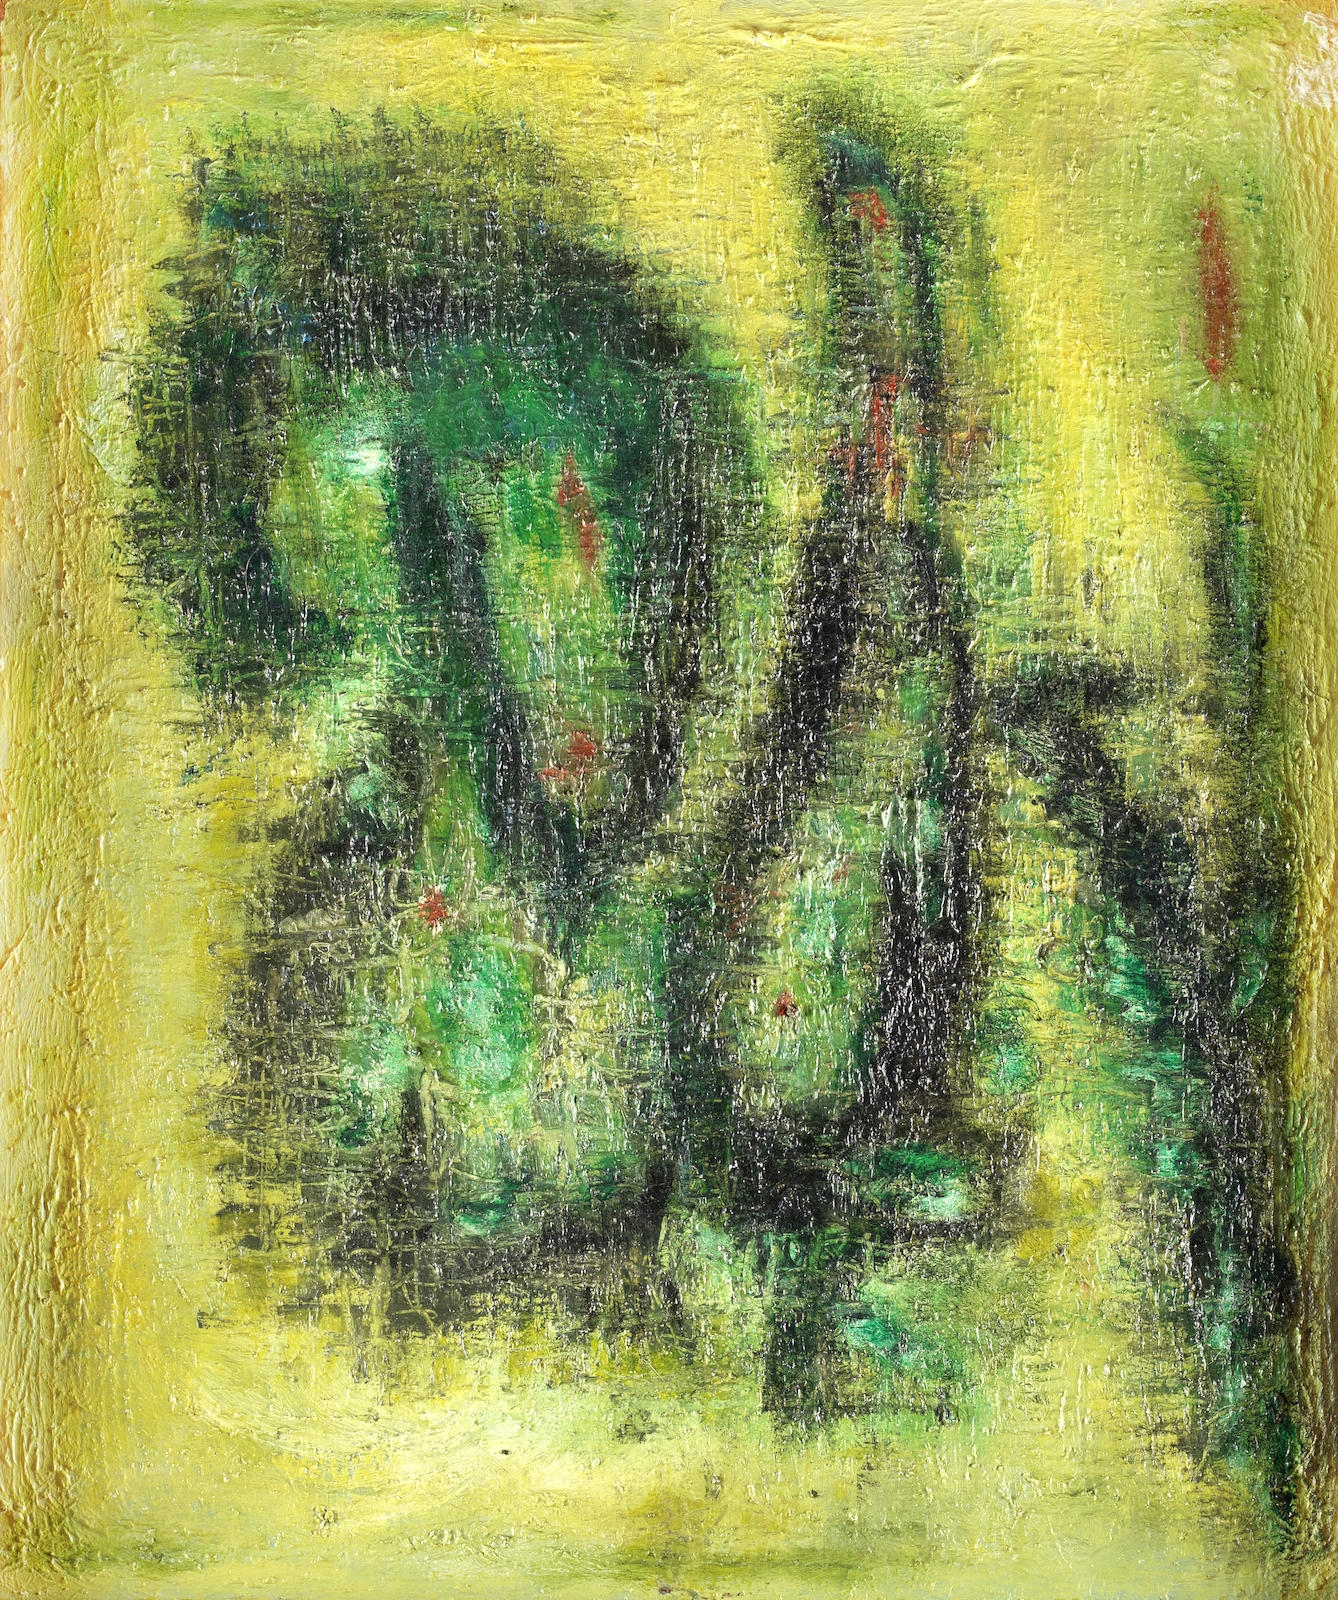 Paisley Composition in Green by Fahr-el-Nissa Zeid, circa 1960